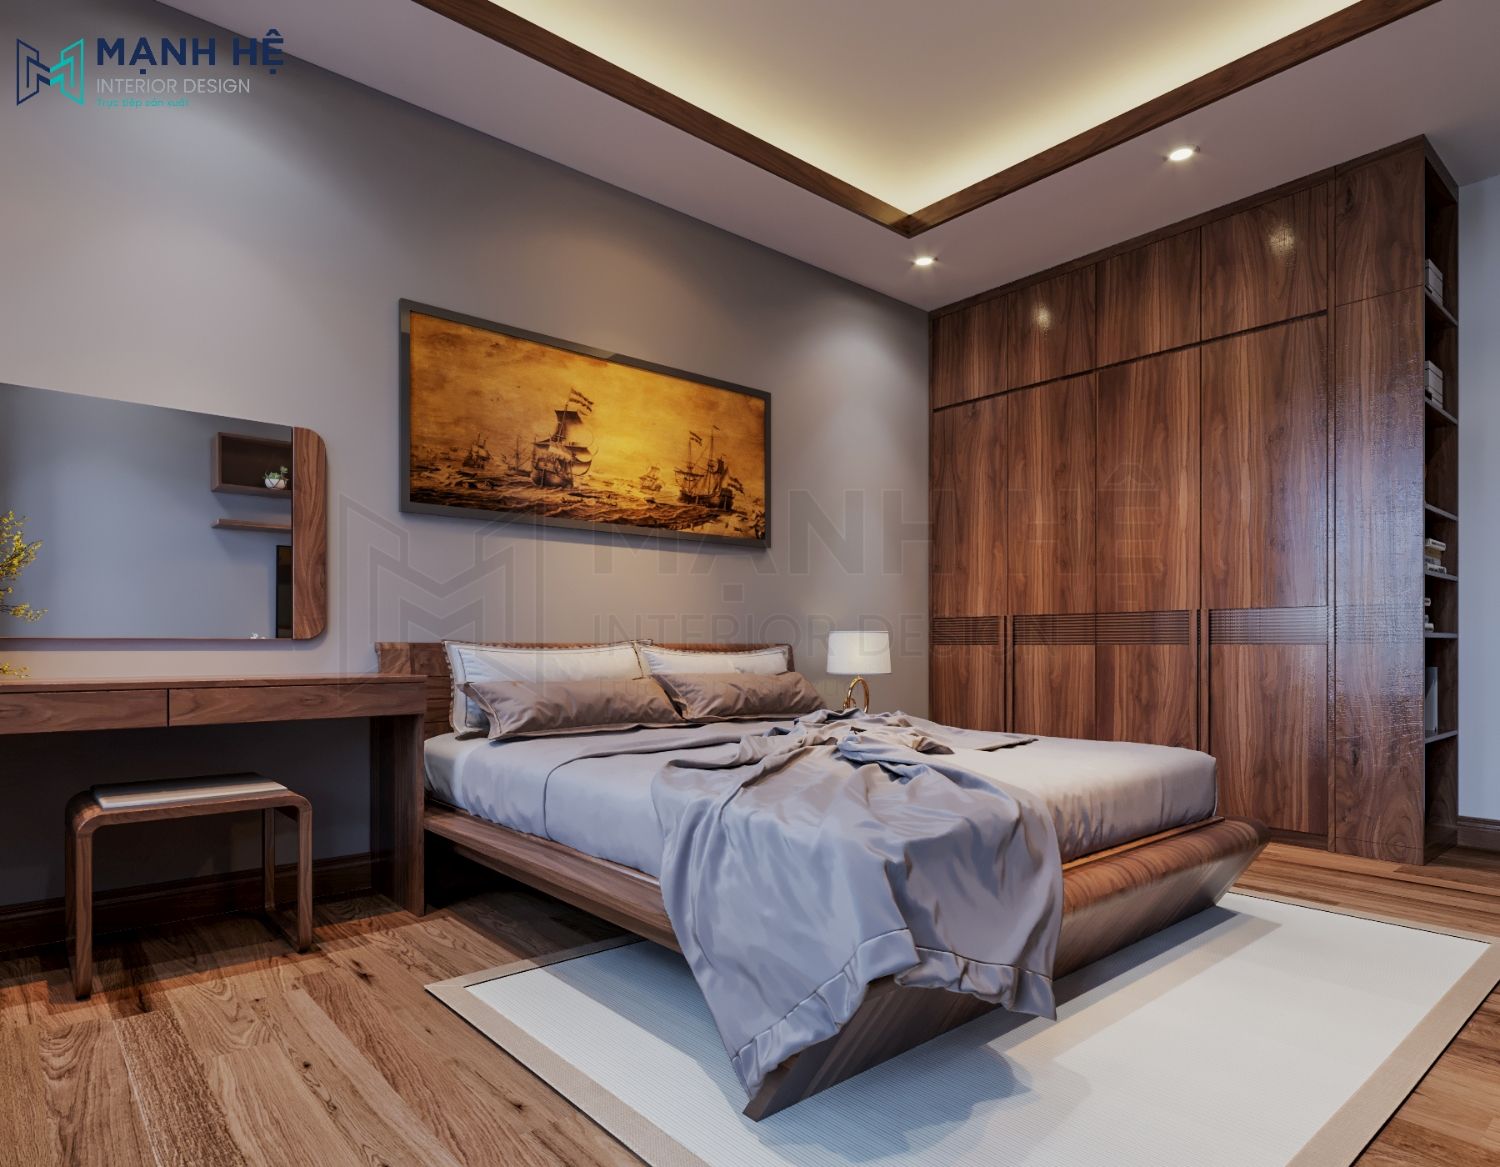 Phòng ngủ được thiết kế tận dụng không gian như giường,bàn trang điểm, tủ quần áo